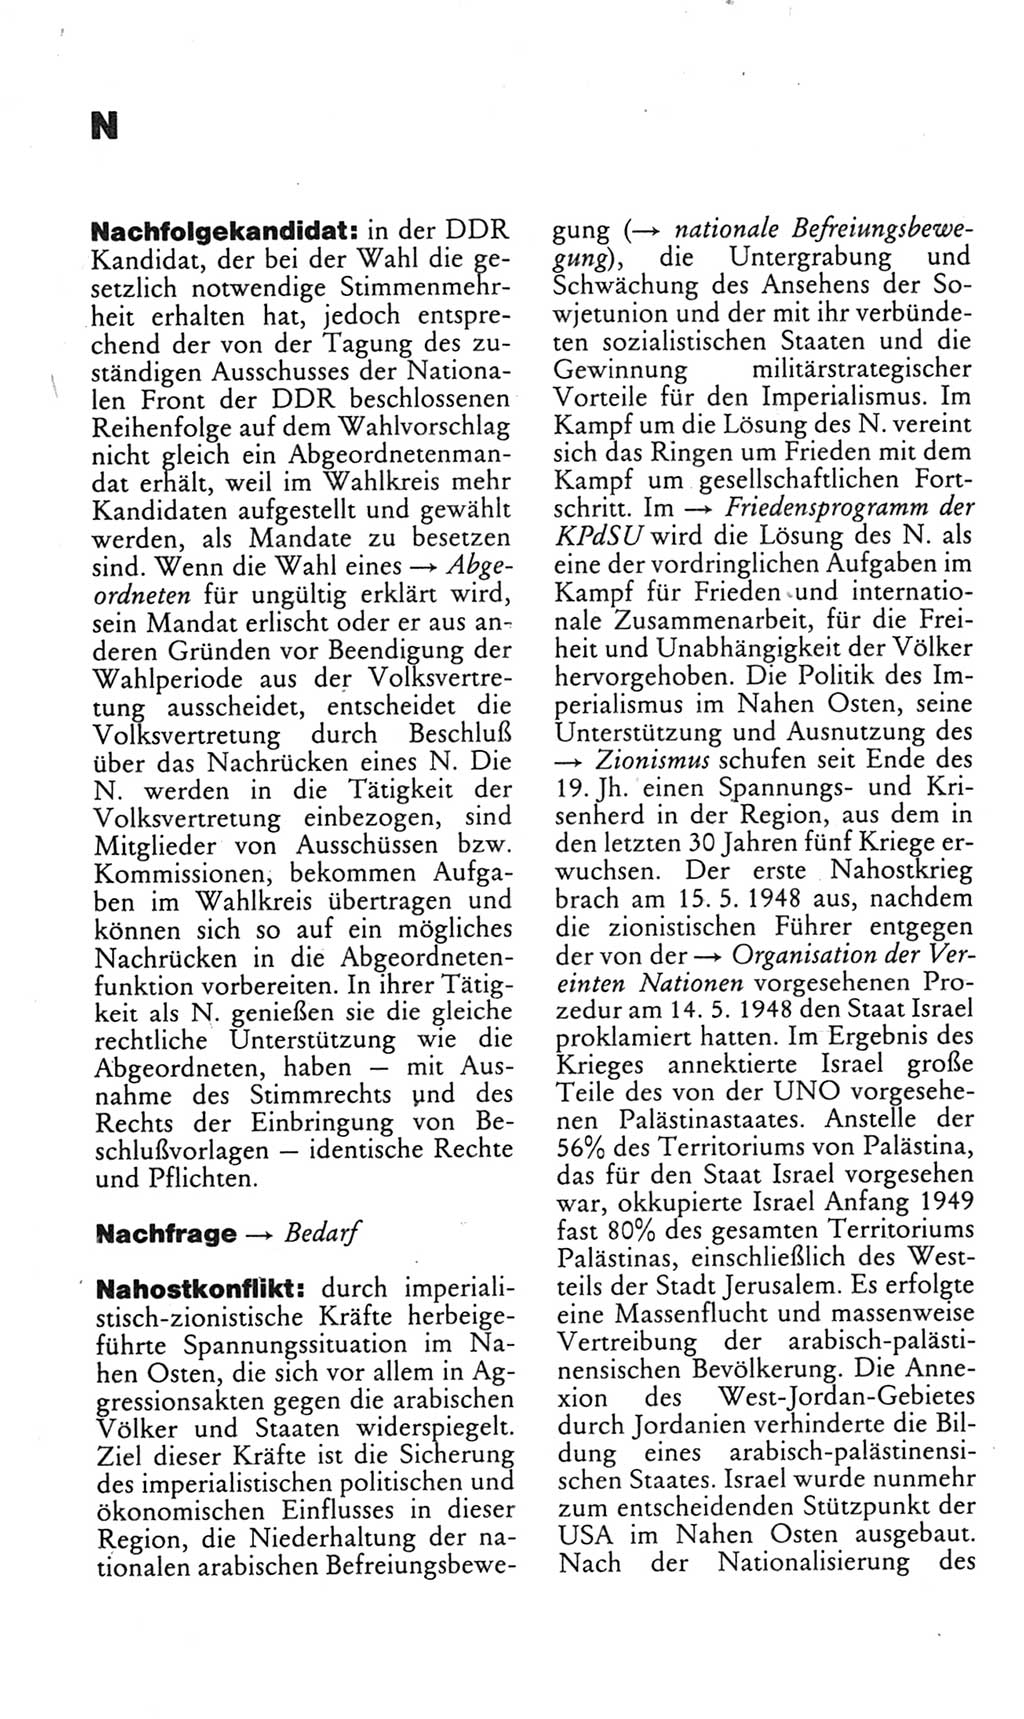 Kleines politisches Wörterbuch [Deutsche Demokratische Republik (DDR)] 1985, Seite 630 (Kl. pol. Wb. DDR 1985, S. 630)